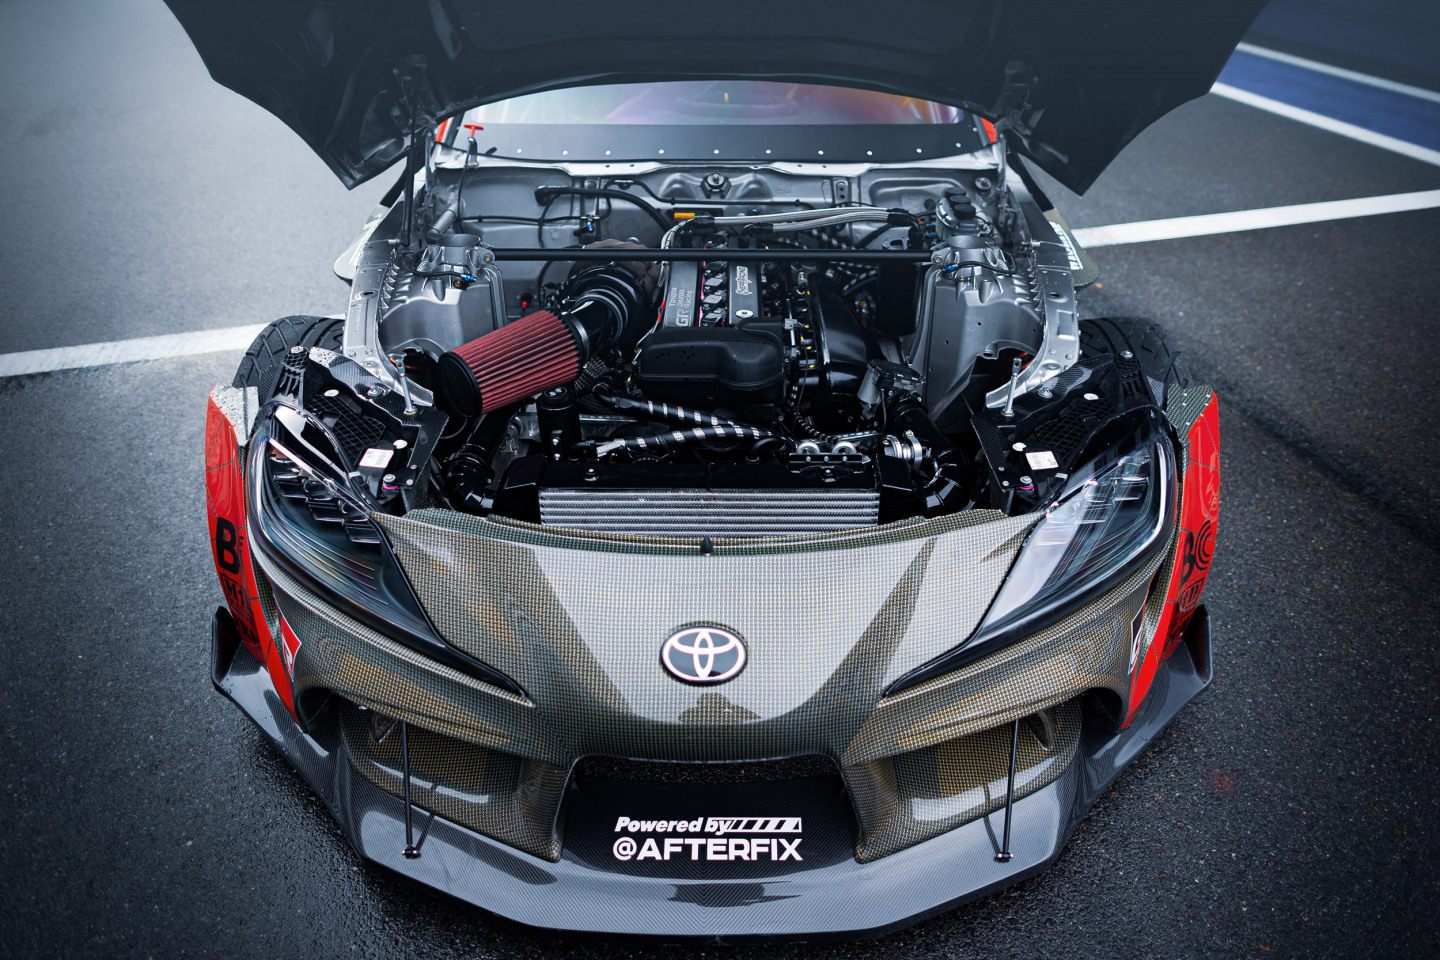 Двигатель Toyota 2JZ GTE мощностью 1015 л. с. © ООО «Тойота Мотор»